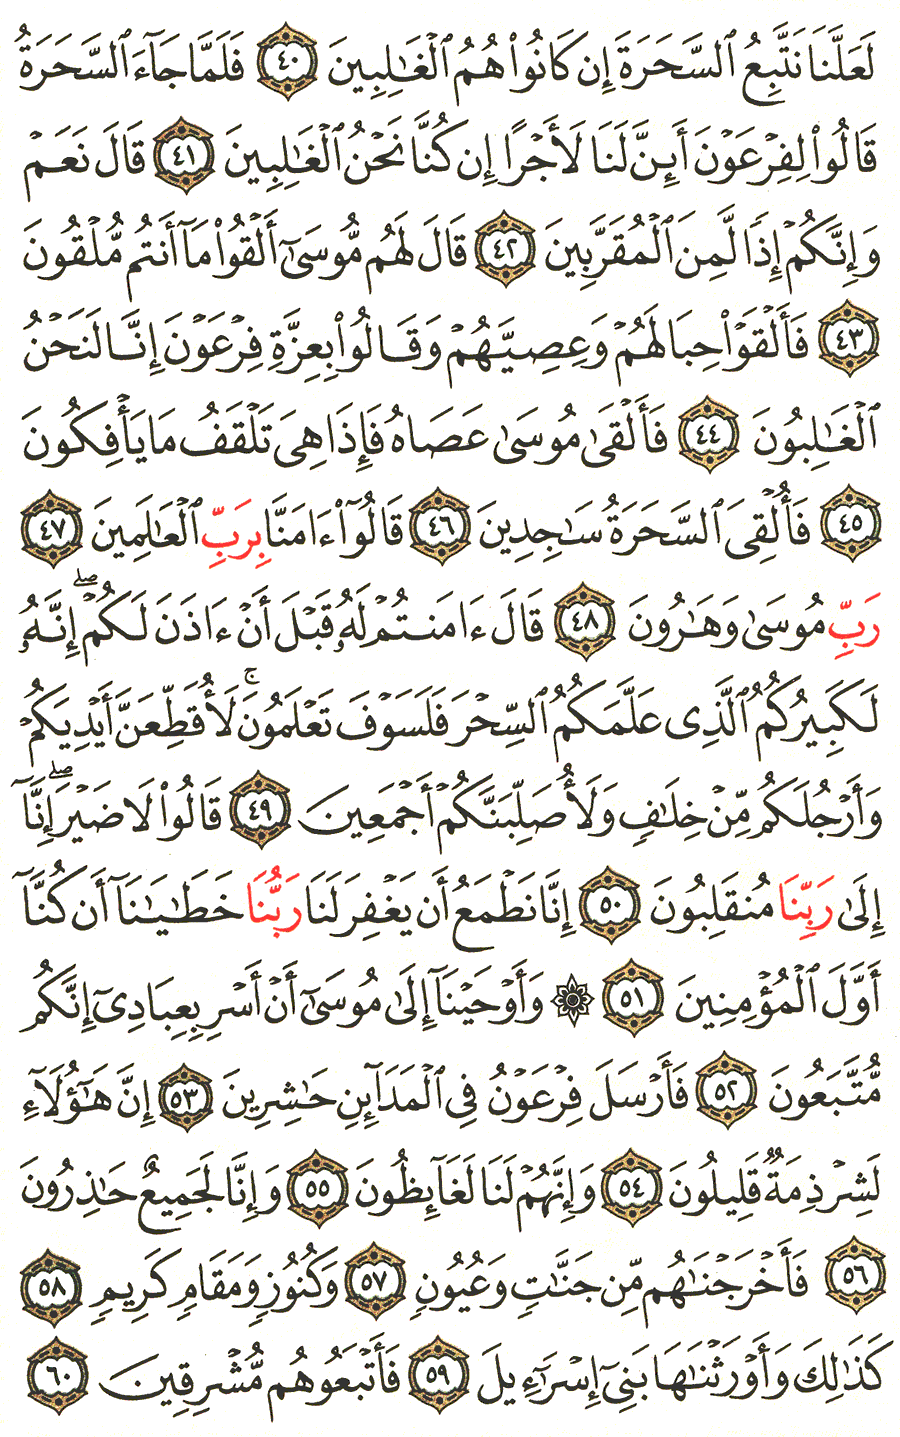 الصفحة 369 من القرآن الكريم